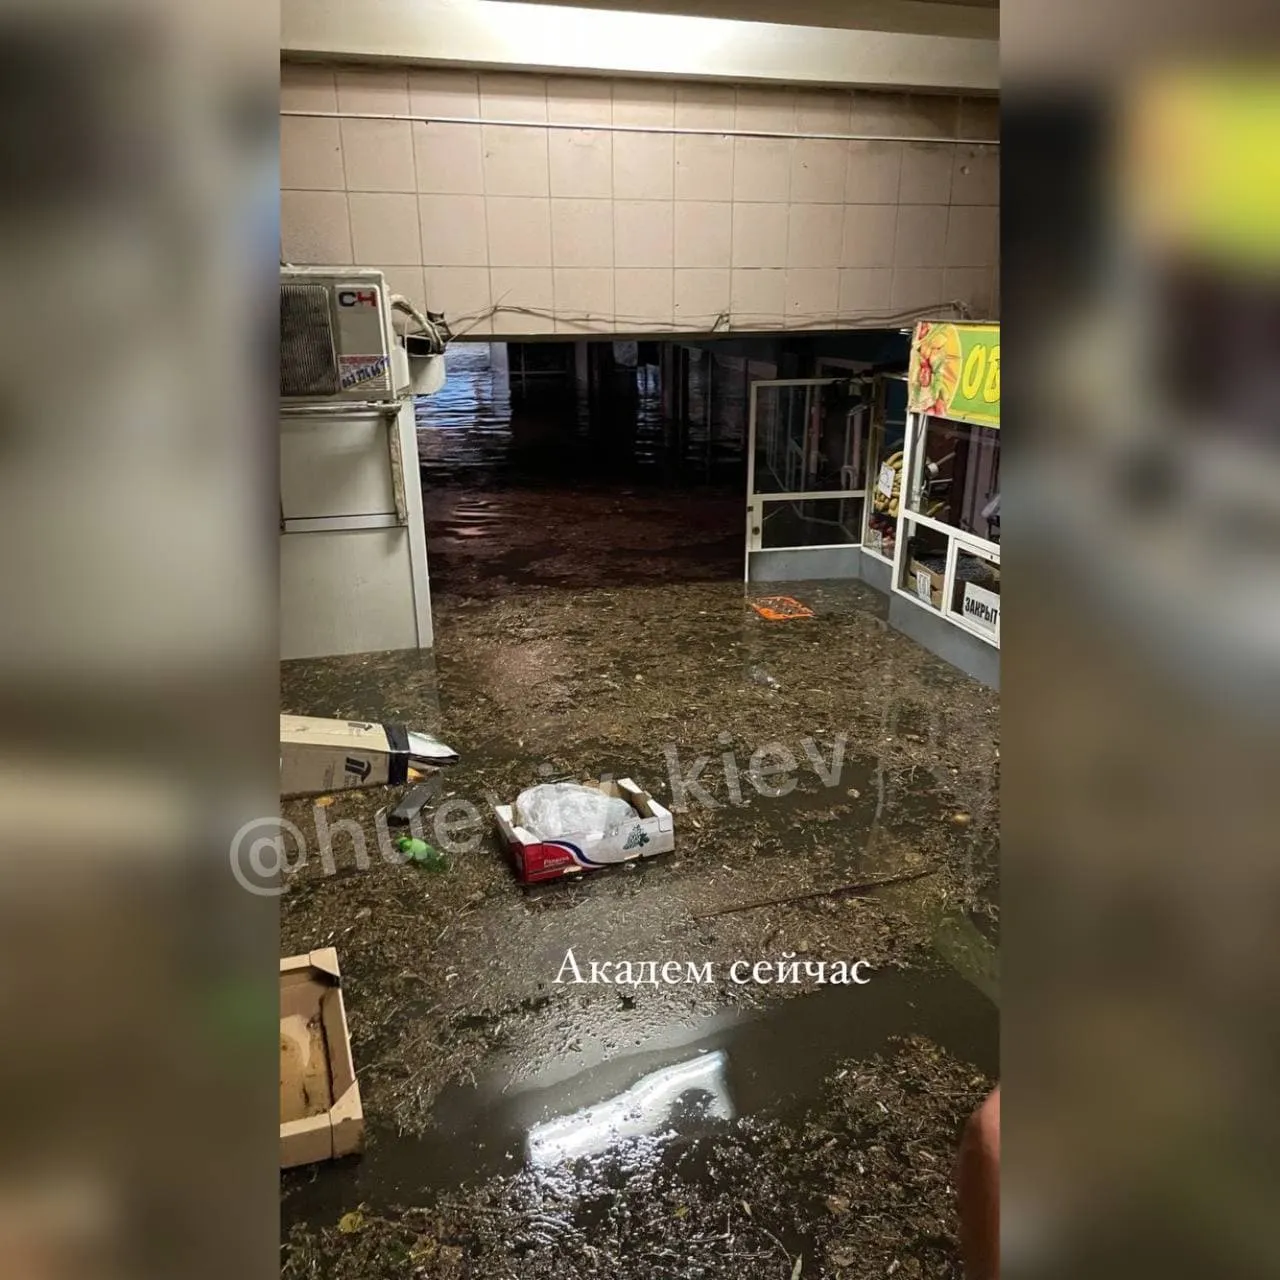 Потоп через негоду в Києві 19.07.2021, наслідки, що кажуть у КМДА 